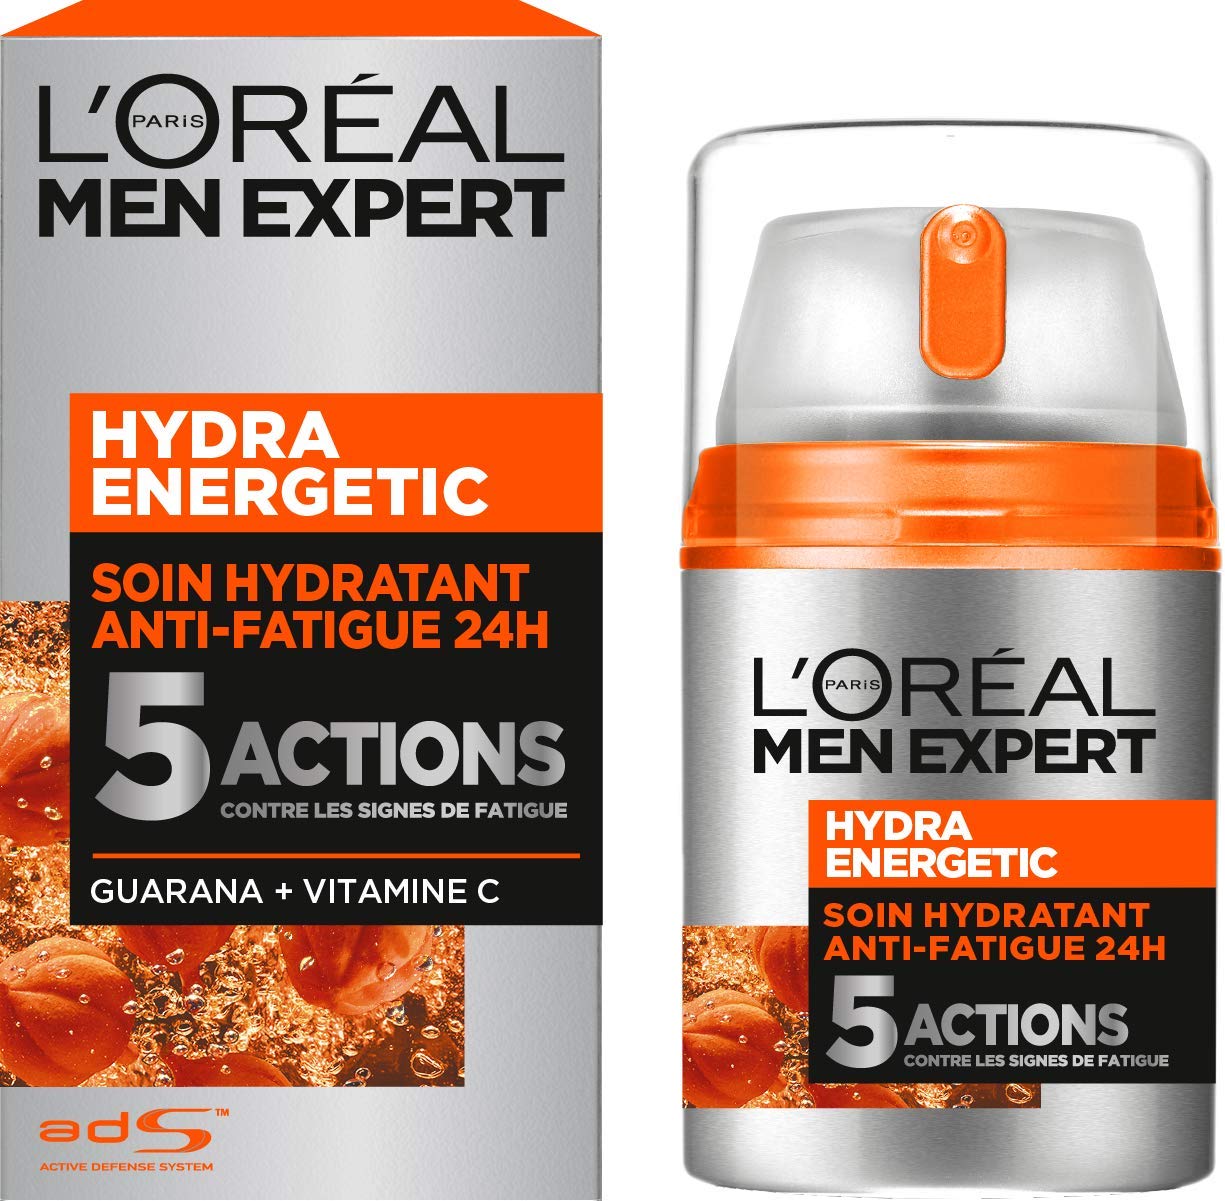 Creme homme Hydra energetic de l'Oréal